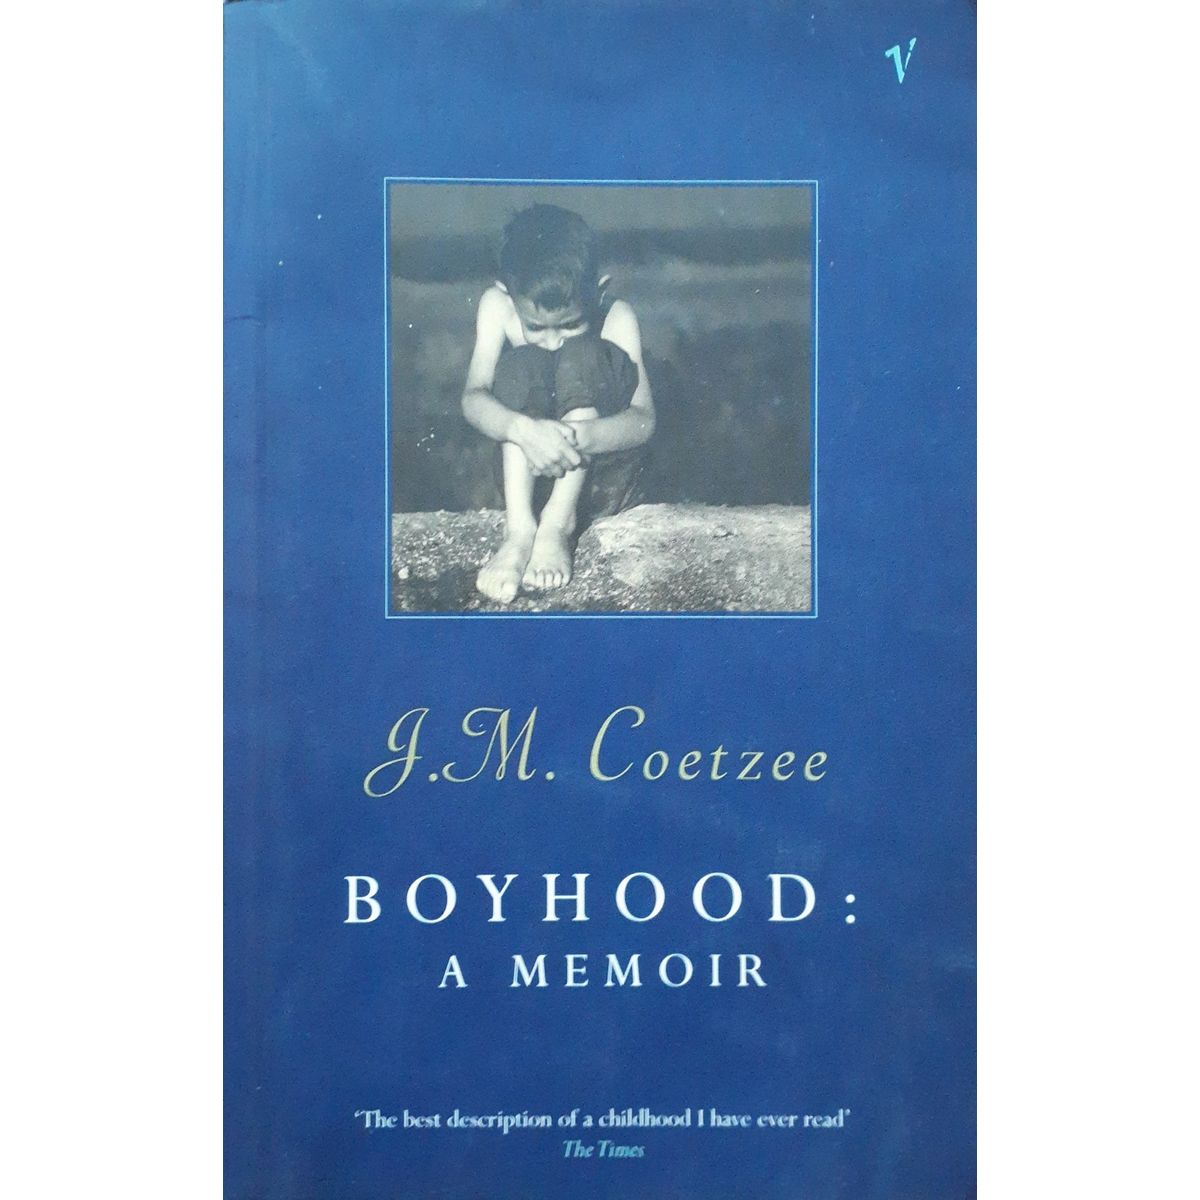 ISBN: 9780099273691 / 0099273691 - Boyhood: A Memoir by J.M. Coetzee [1998]